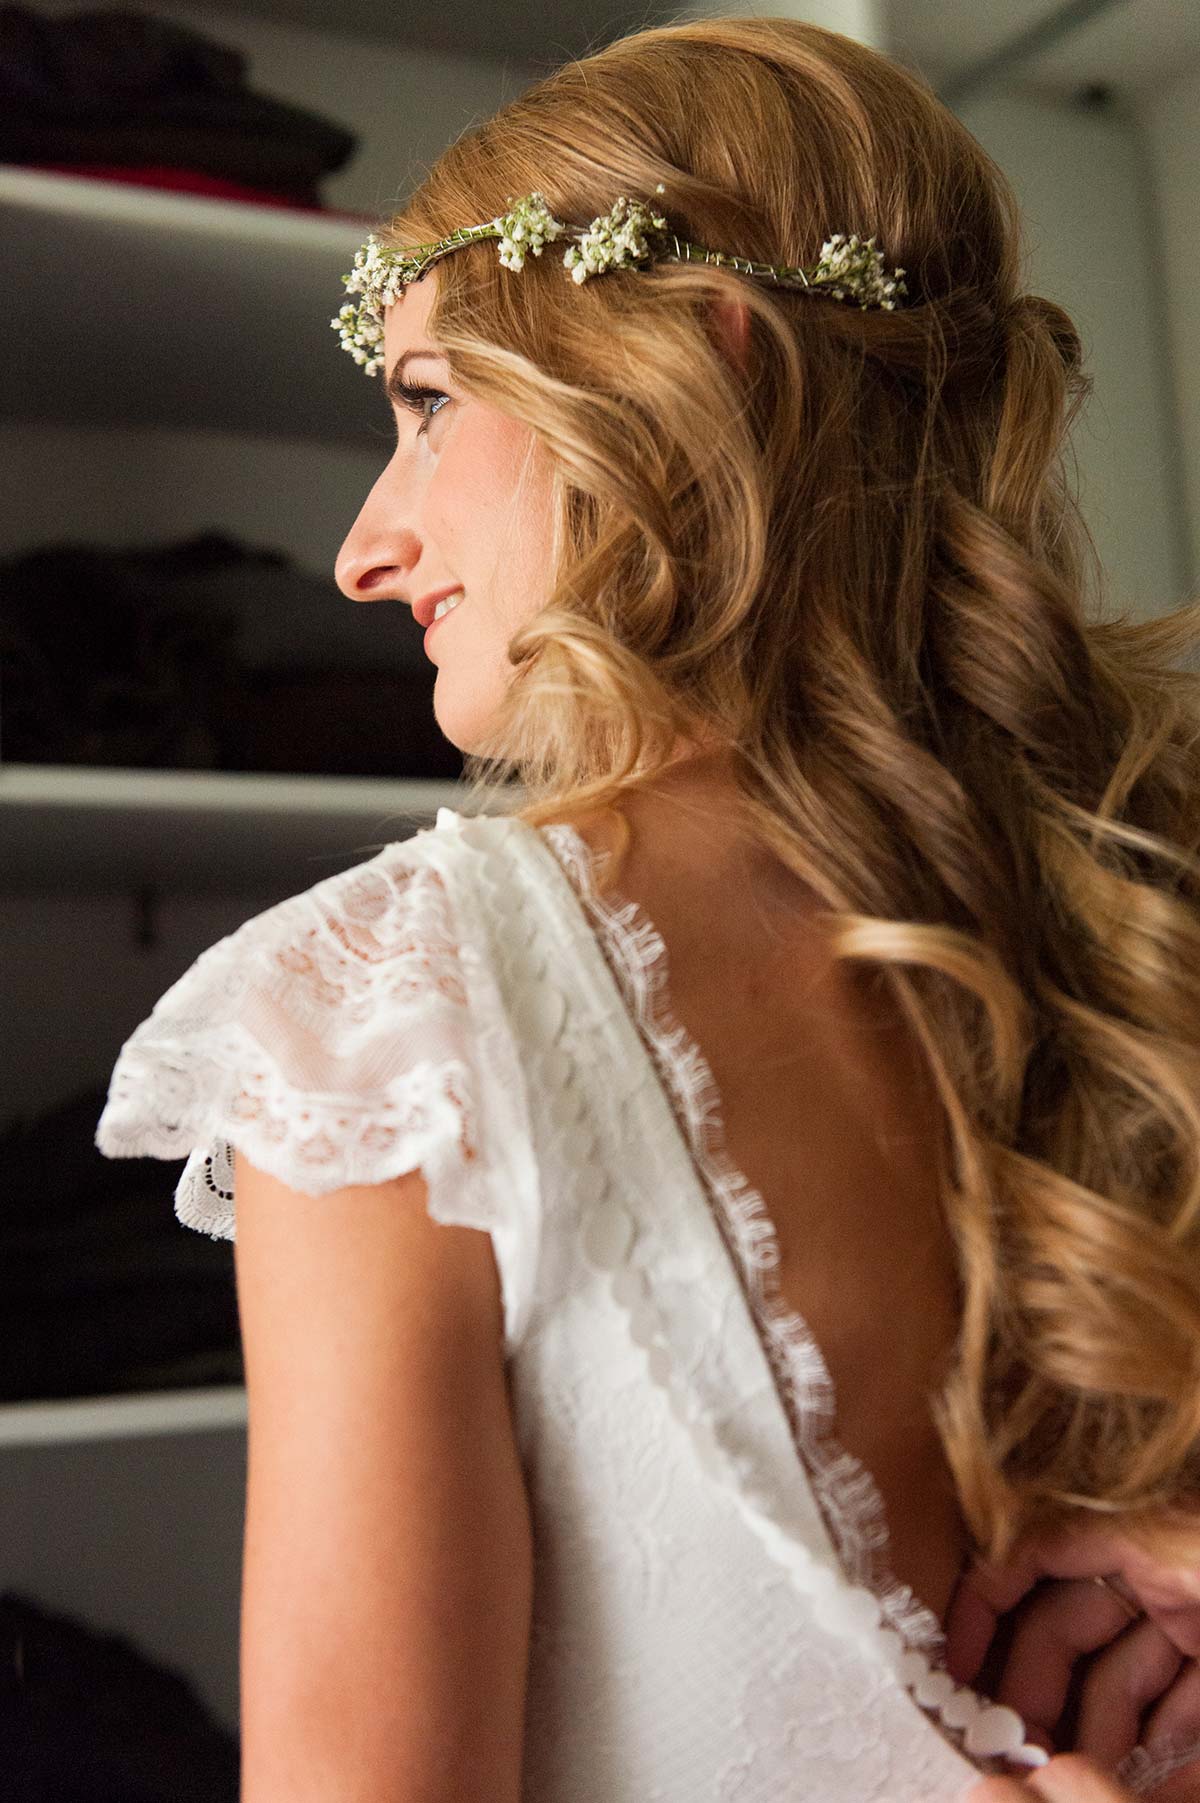 Honeylight Hochzeitsfotografen: Braut mit schönen Brautkleid